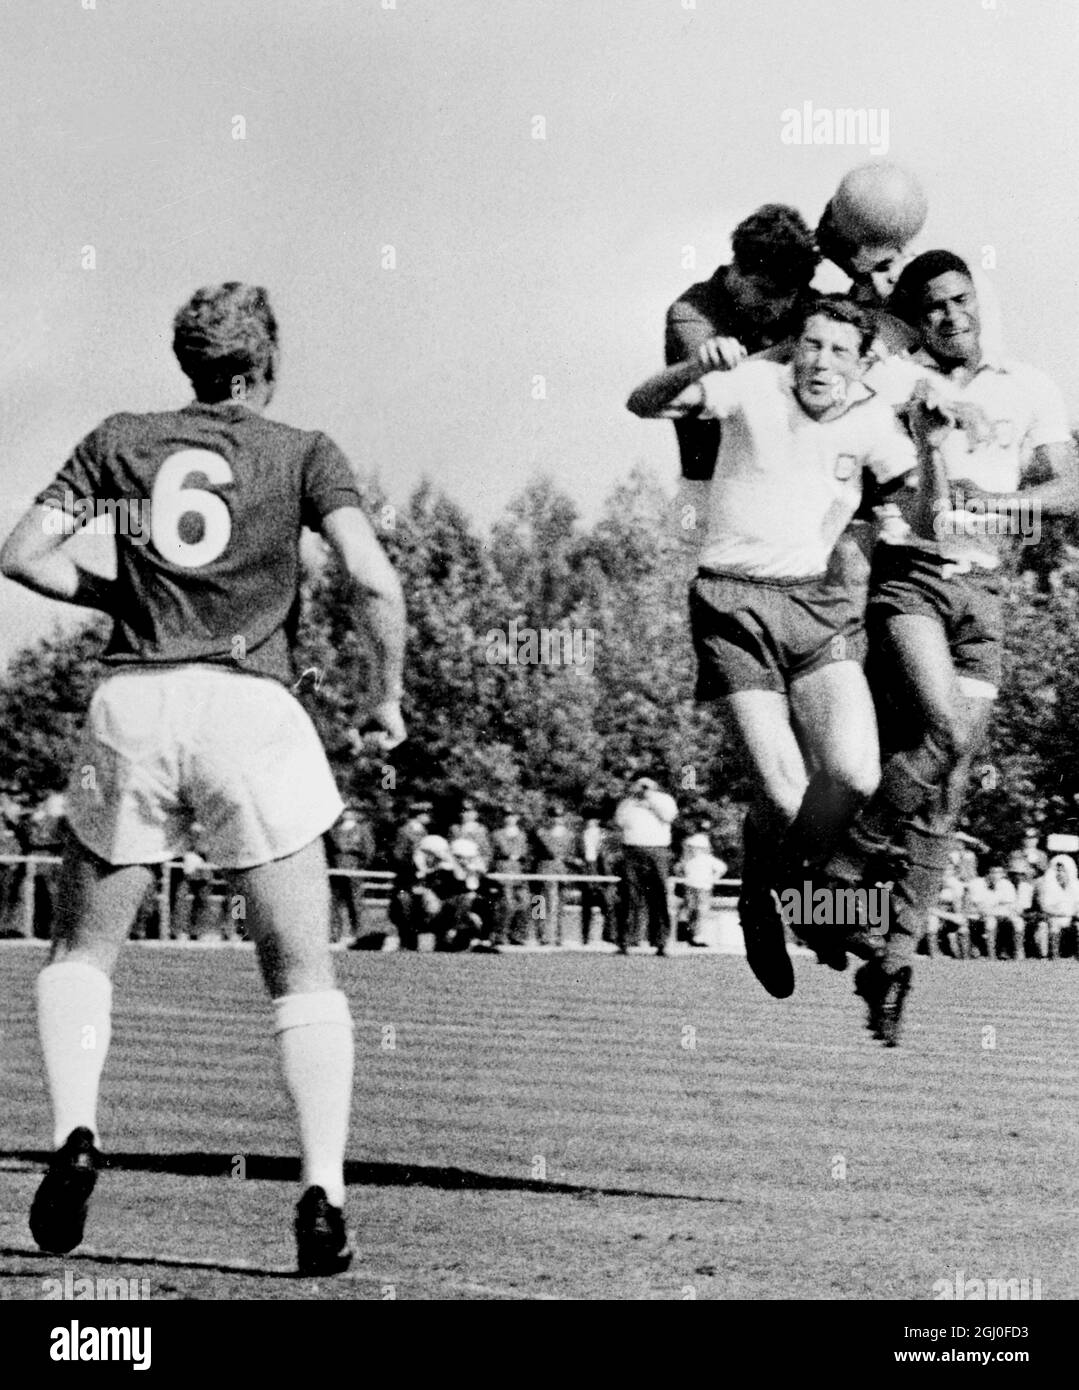 Portugal gegen England der englische Boby Moore (links) sieht zu, wie die portugiesischen Spieler Jose Augusto (vorne links) und Eusebio (rechts) während des Spiels in Lissabon, Portugal, um den Ball herausfordern. Mai 1964. Stockfoto